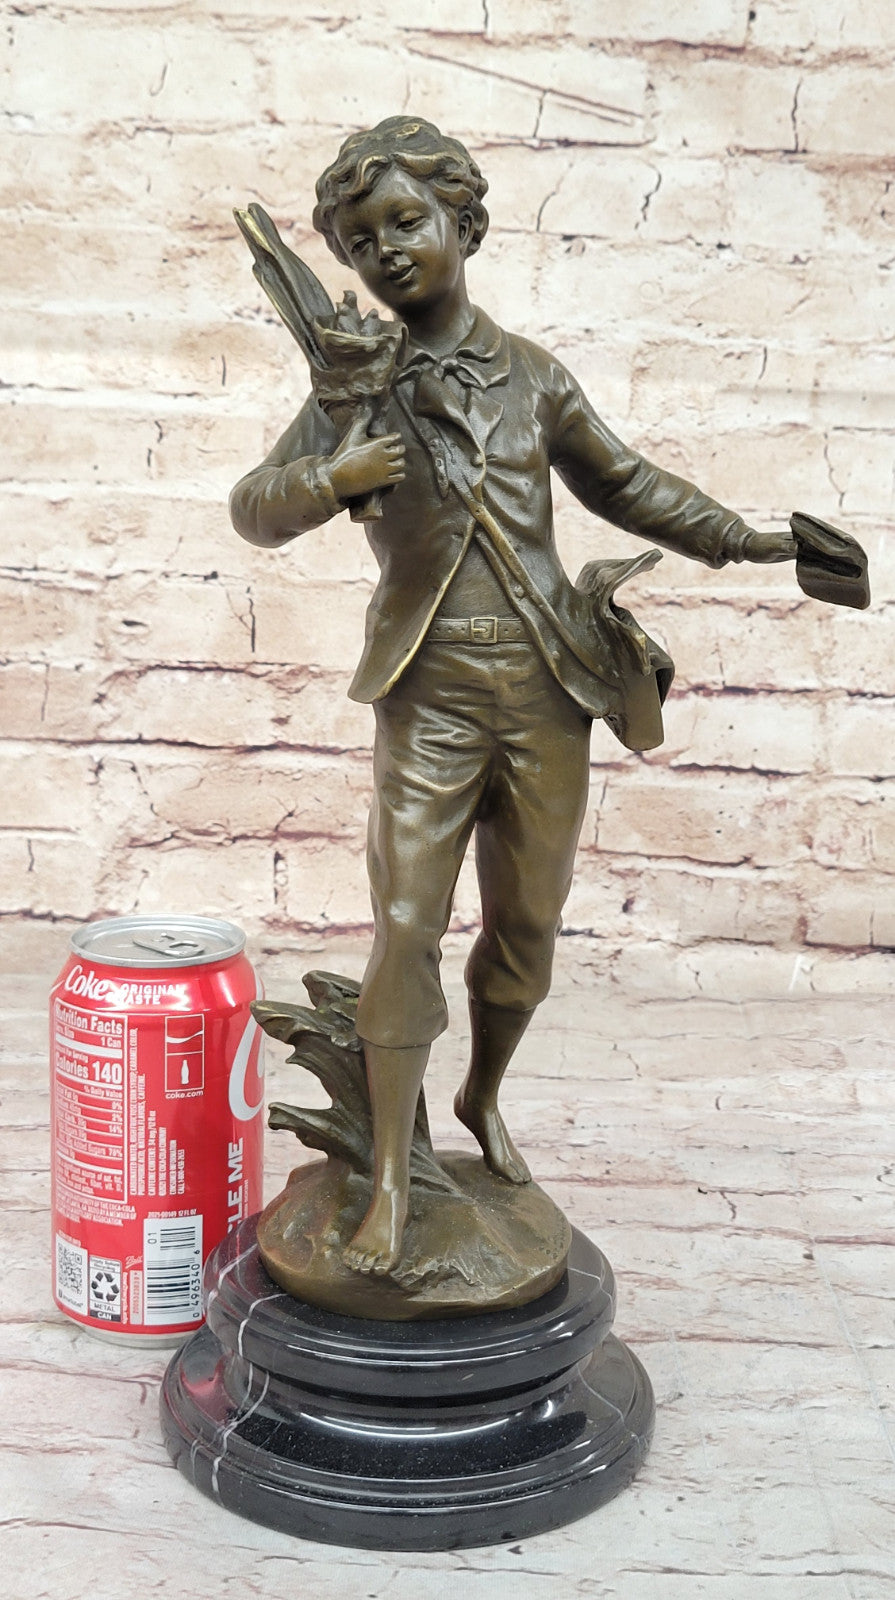 Detailed Figurine: Bruchon`s French Bronze School Boy - Hot Cast Sculpture